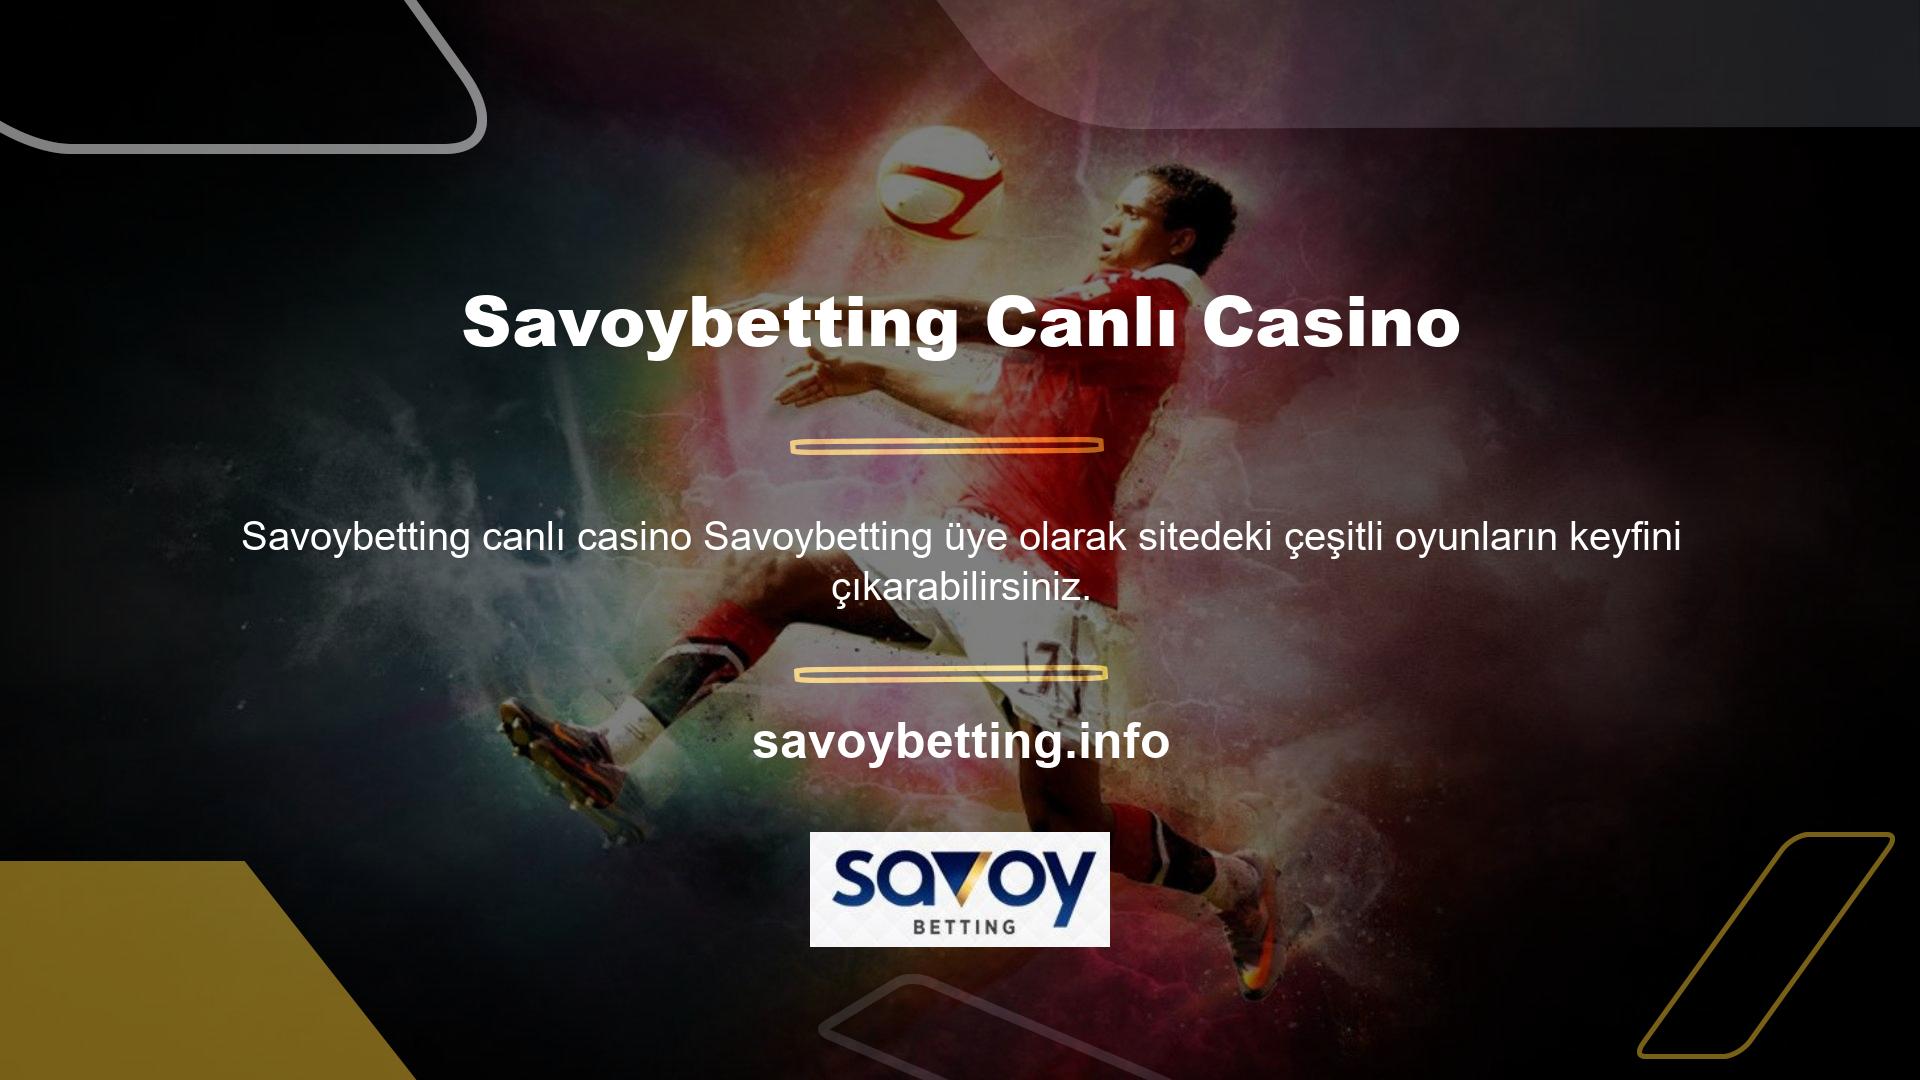 Savoybetting Canlı Casino ise gerçek bir casino atmosferi yaratmaktadır